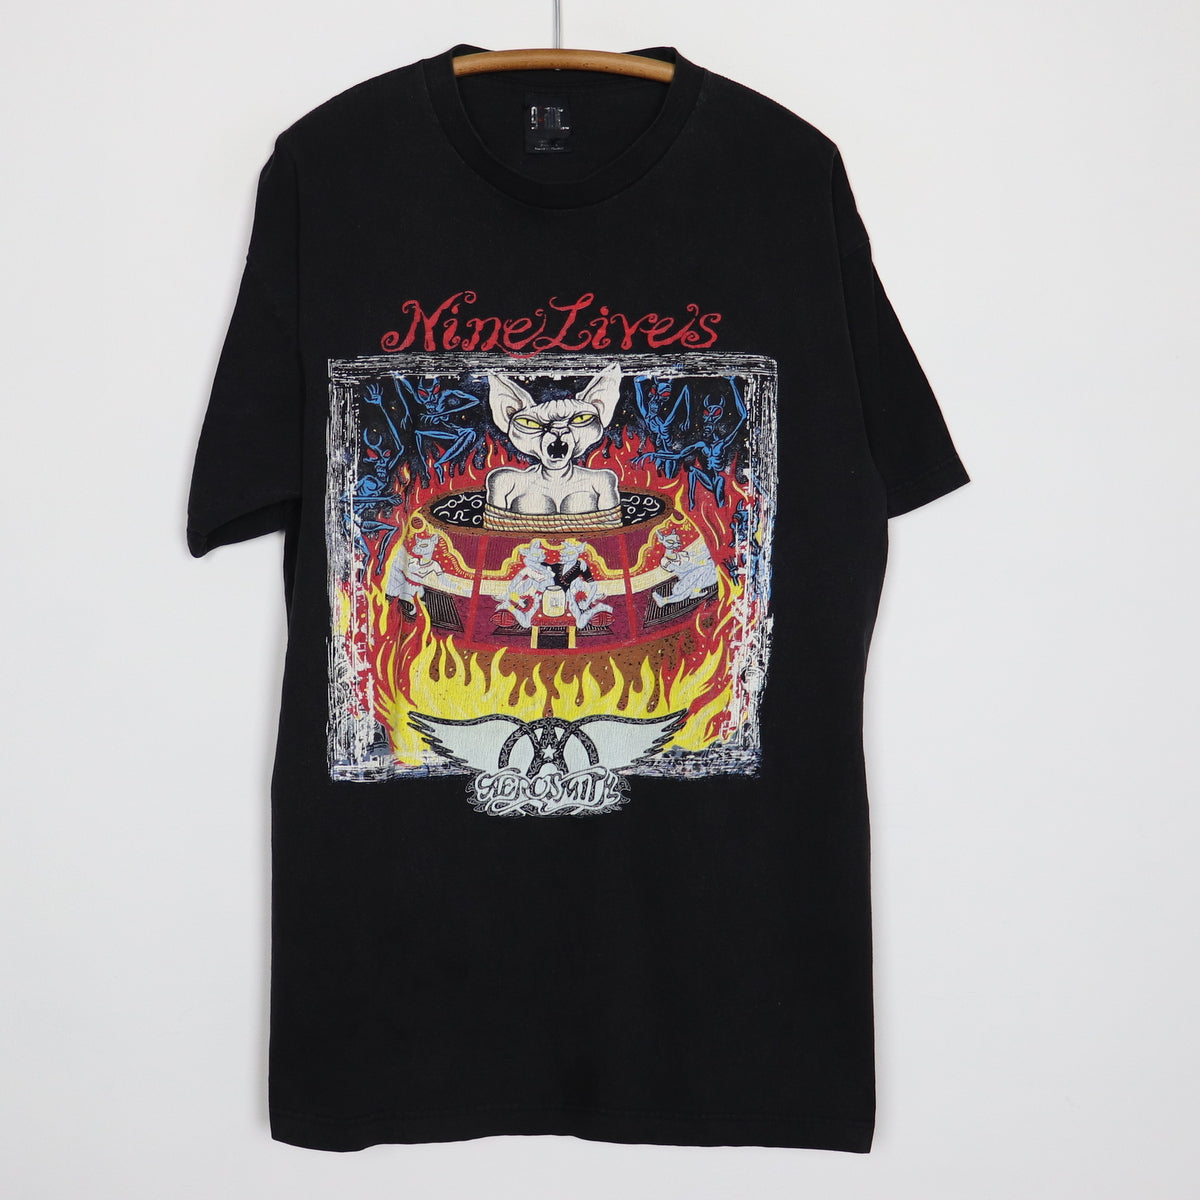 AERO SMITH NINE LIVES TOUR 1997 - Tシャツ